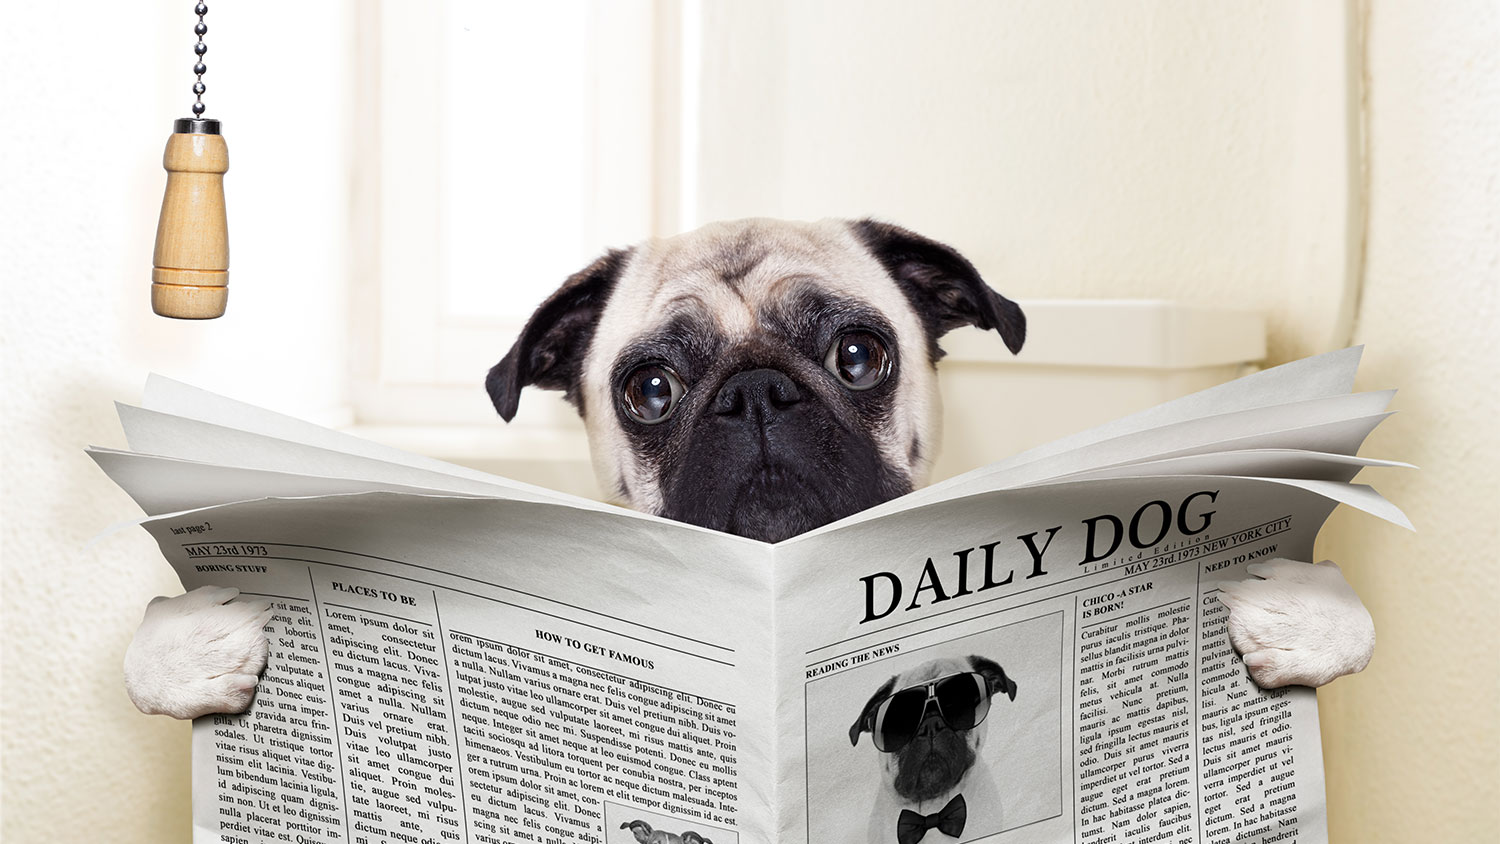 Daily dog, daily doo